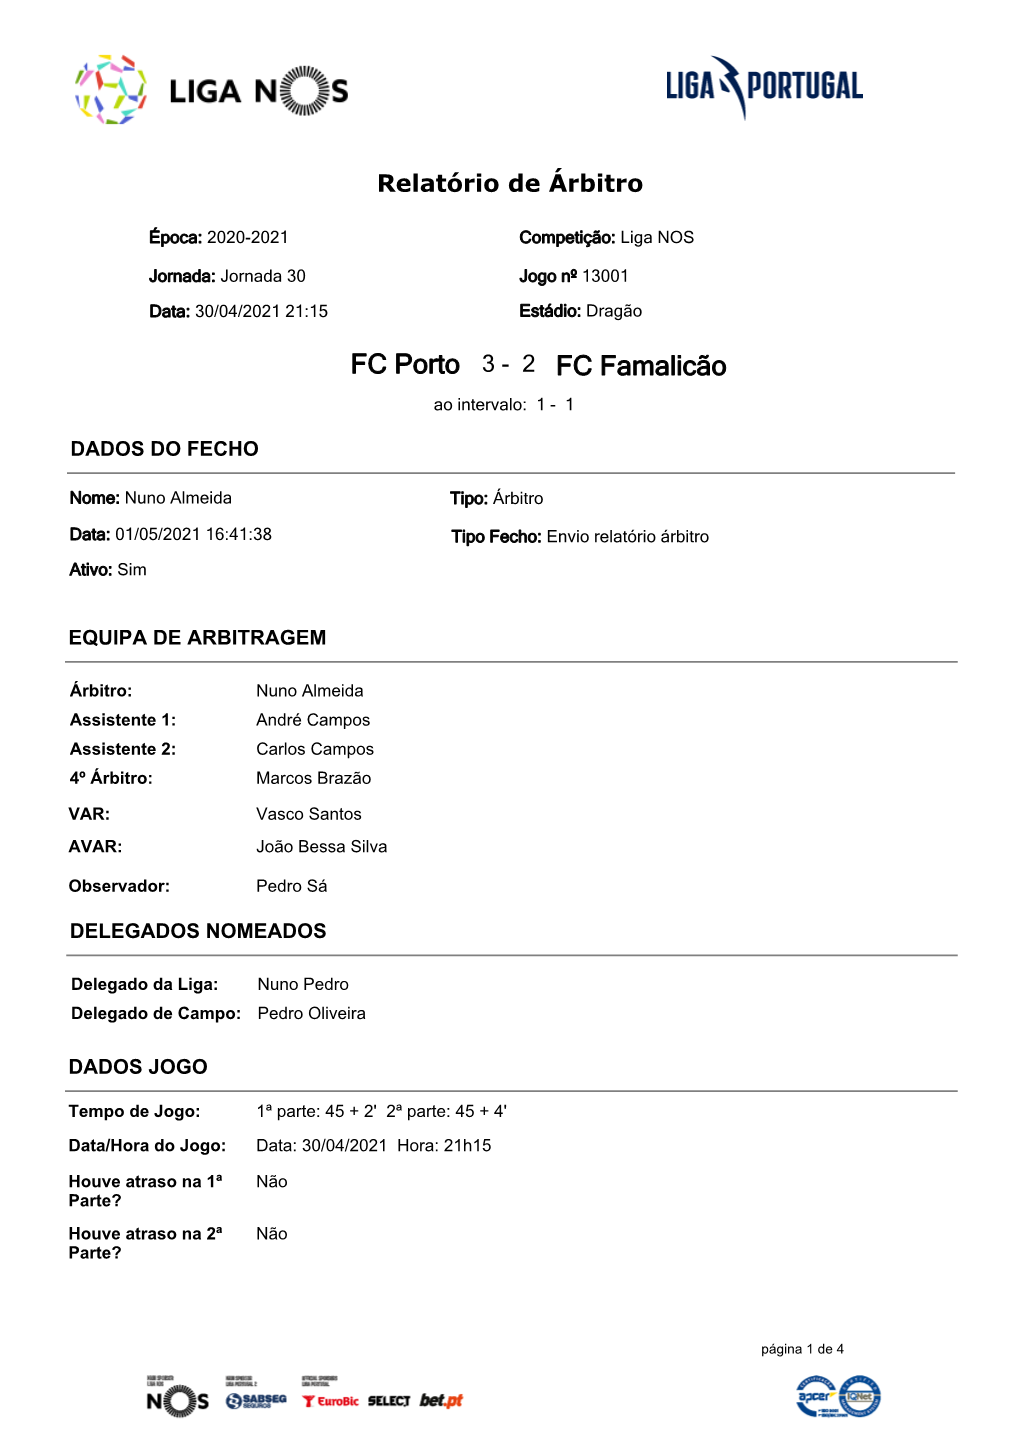 FC Porto 3 - 2 FC Famalicão Ao Intervalo: 1 - 1